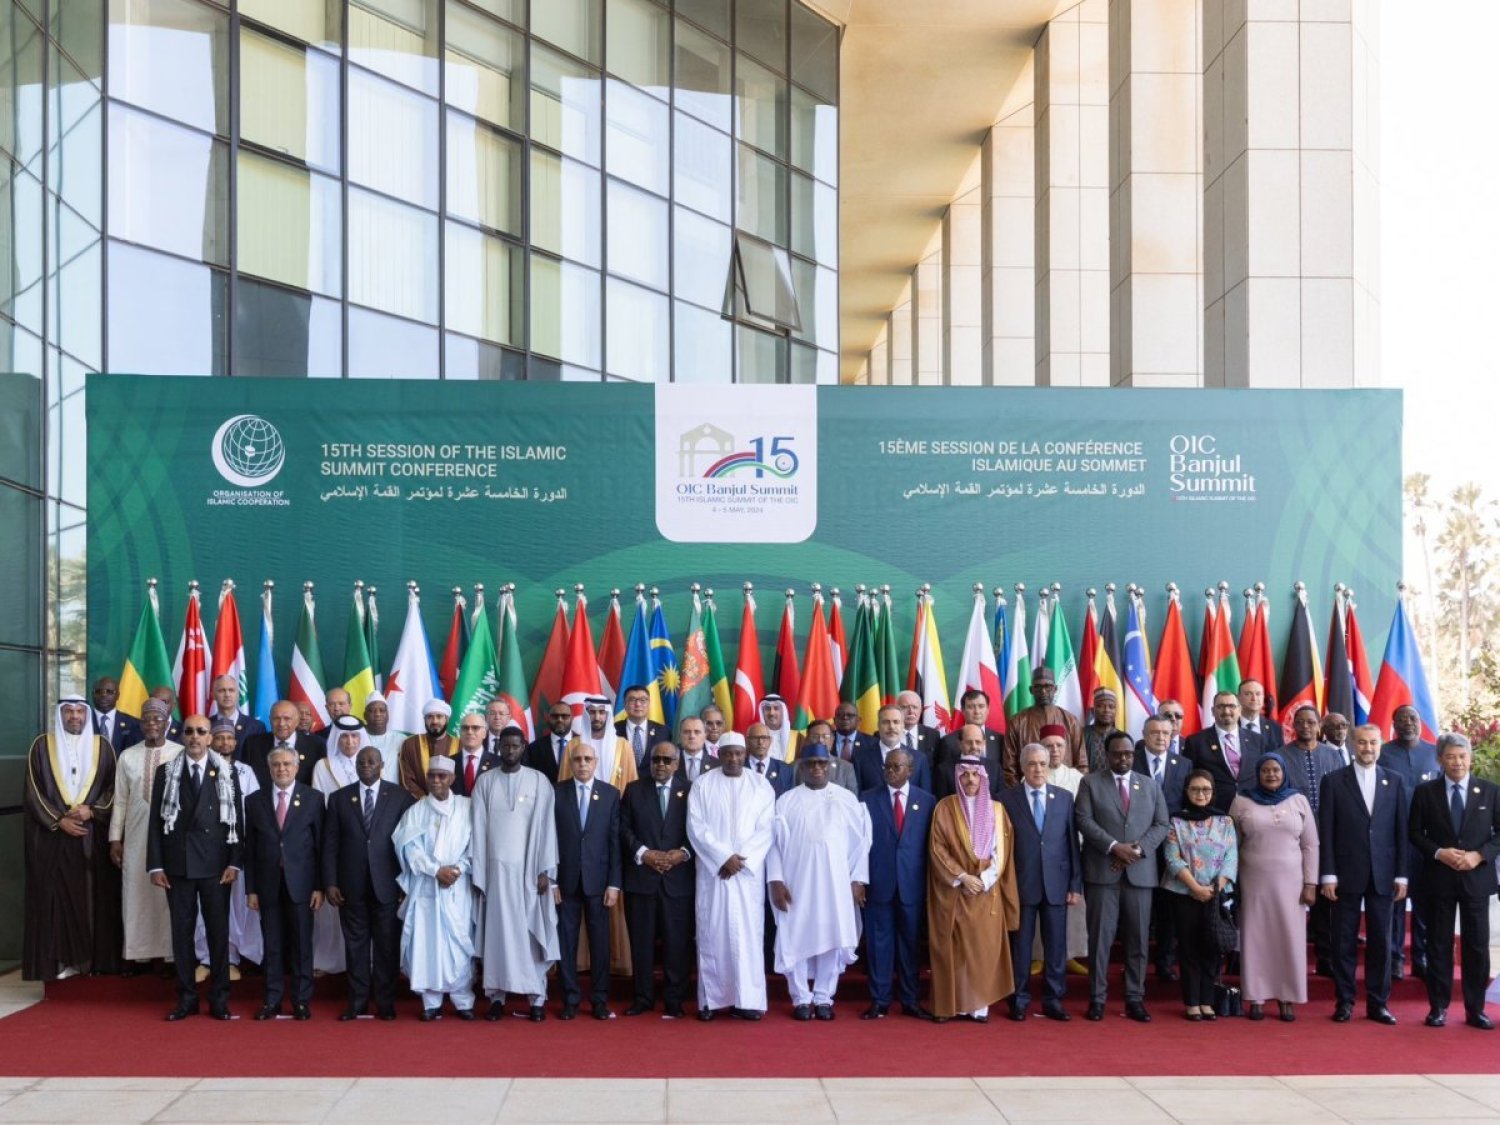 الأمير فيصل بن فرحان والوزراء المشاركون بالقمة الإسلامية في صورة جماعية (الخارجية السعودية)